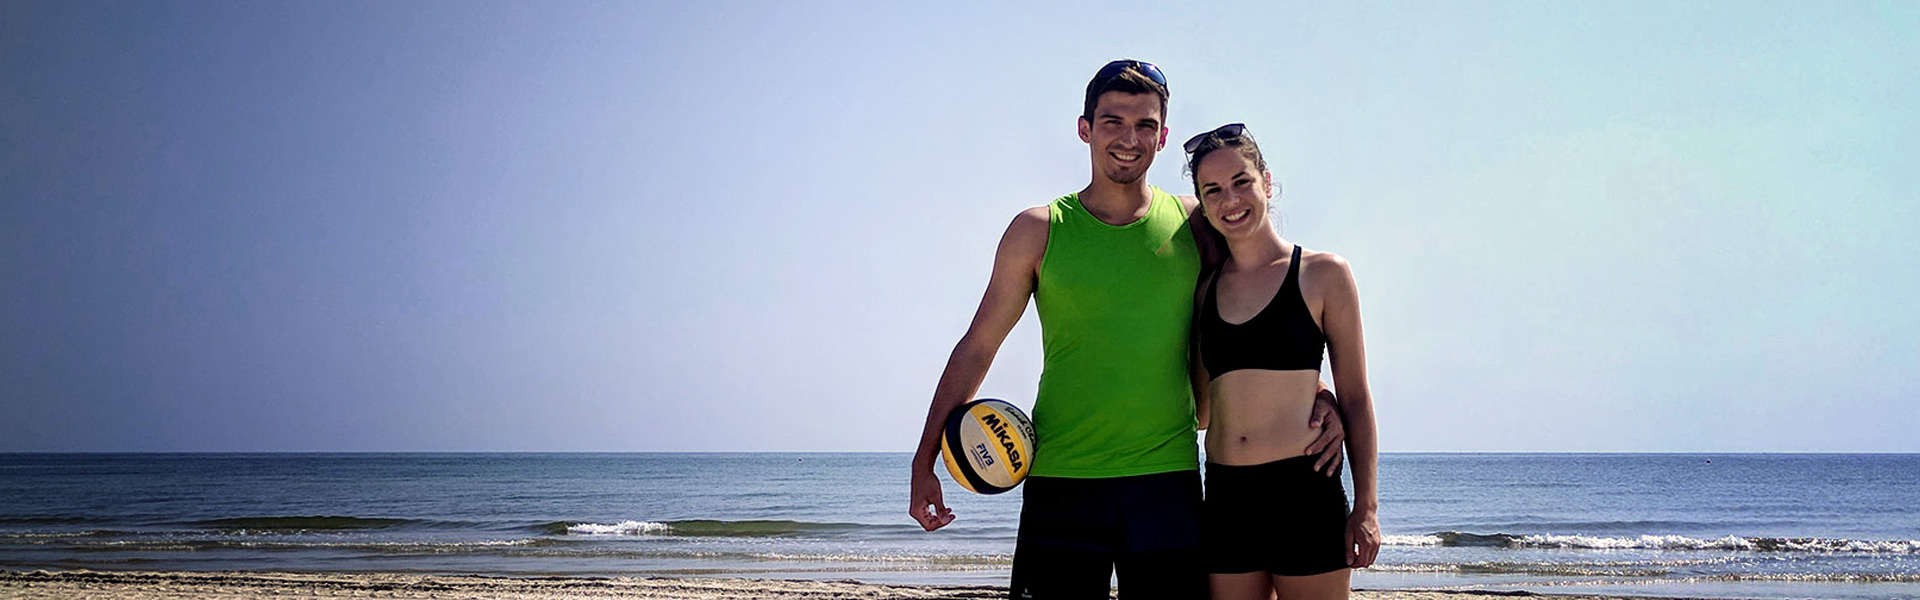 Beach-Volleyball Spanien